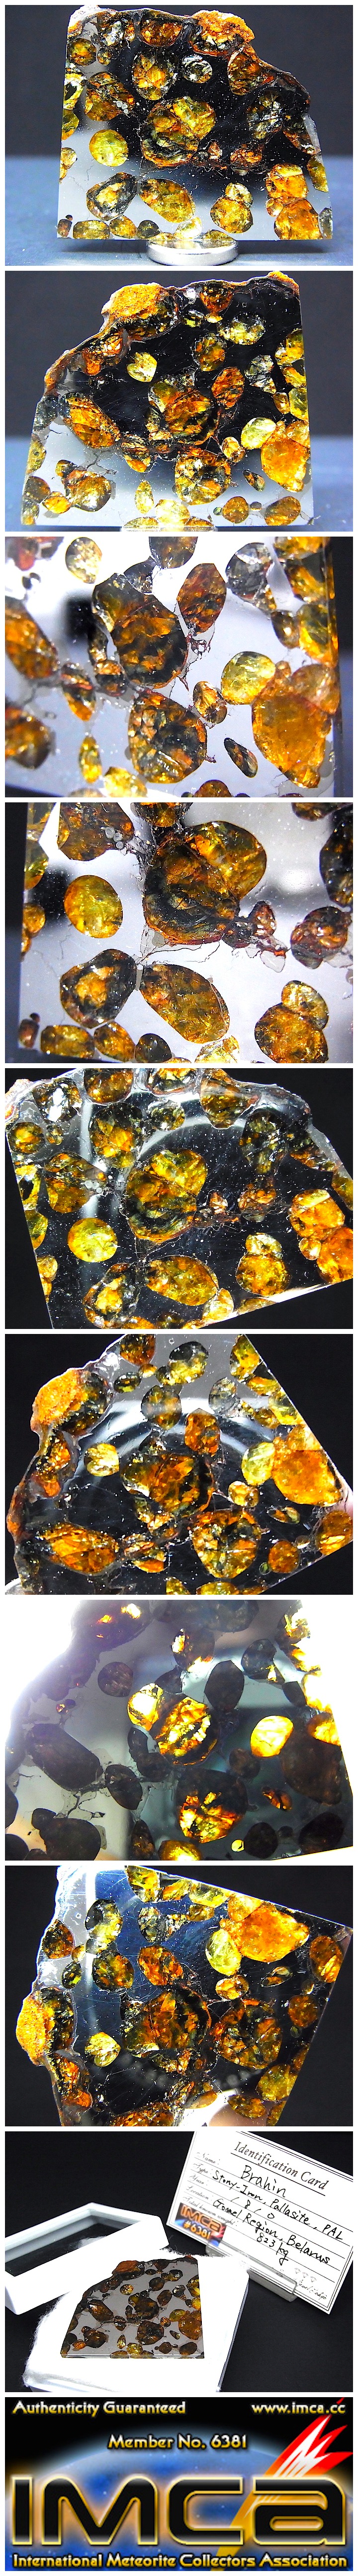 【 販売済 隕石 】ブラヒン隕石 9.5g パラサイト隕石★ベラルーシ 石鉄隕石